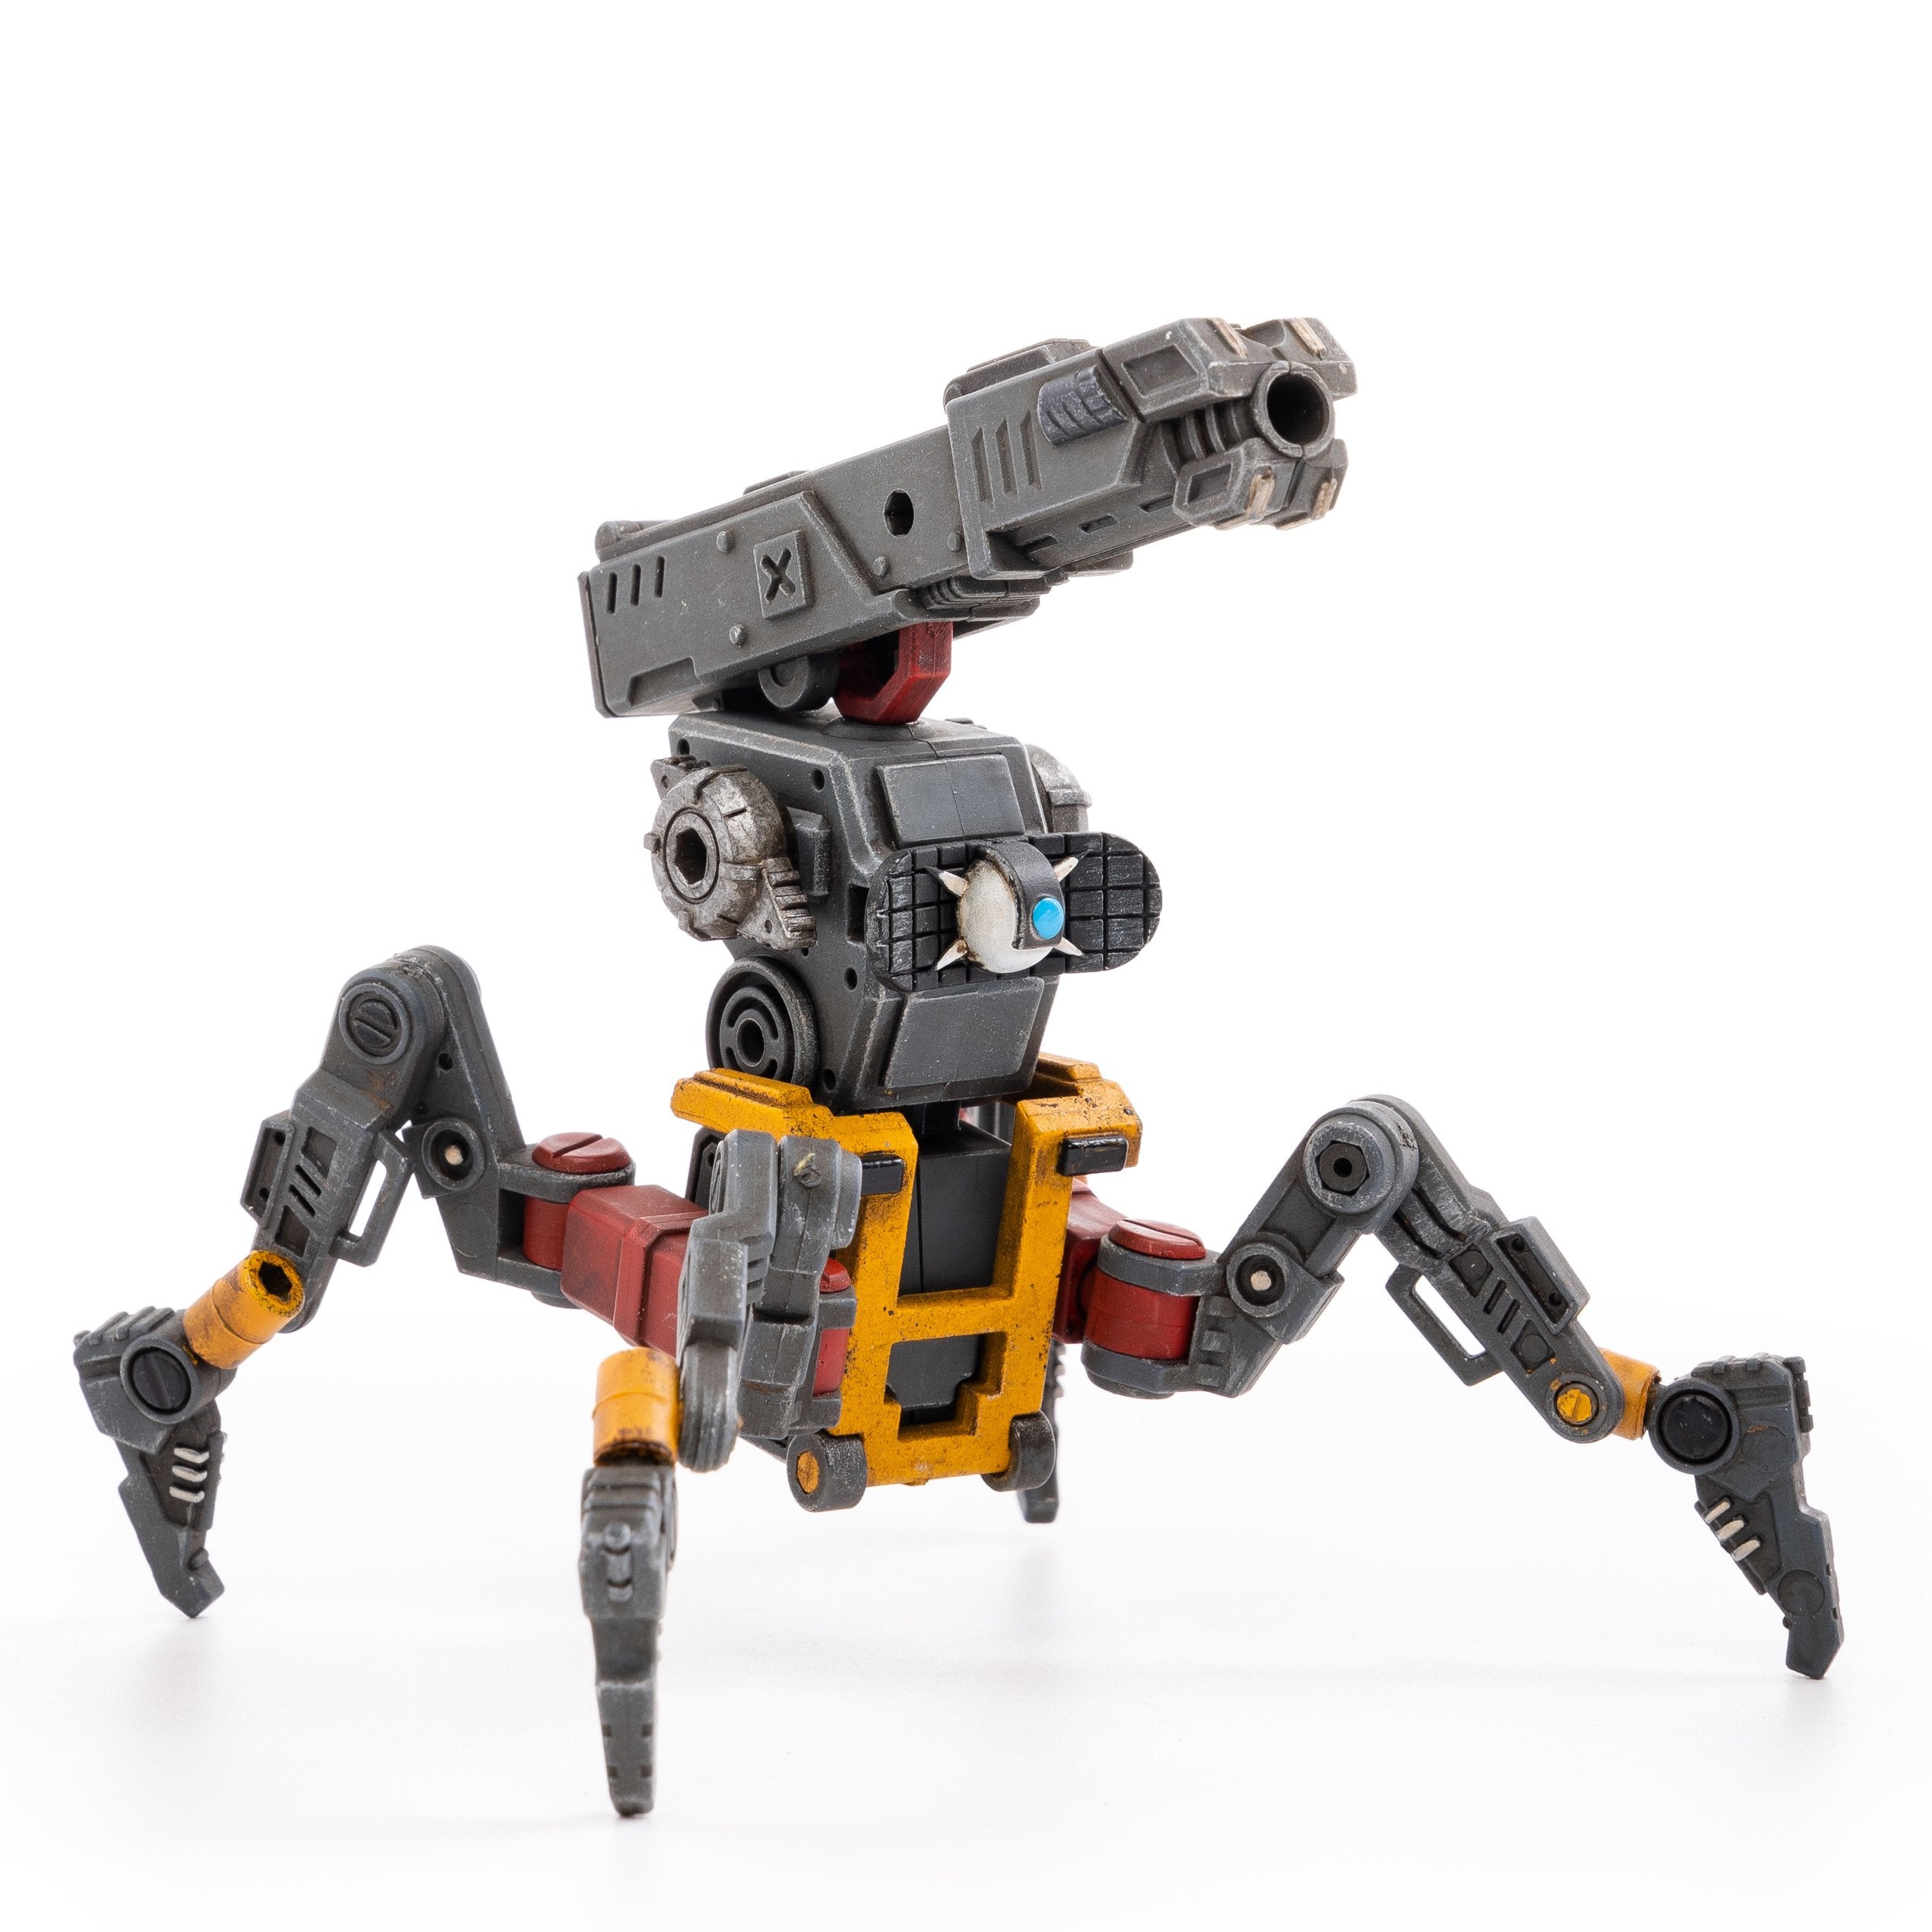 JOYTOY X12 Attack-Support Robots